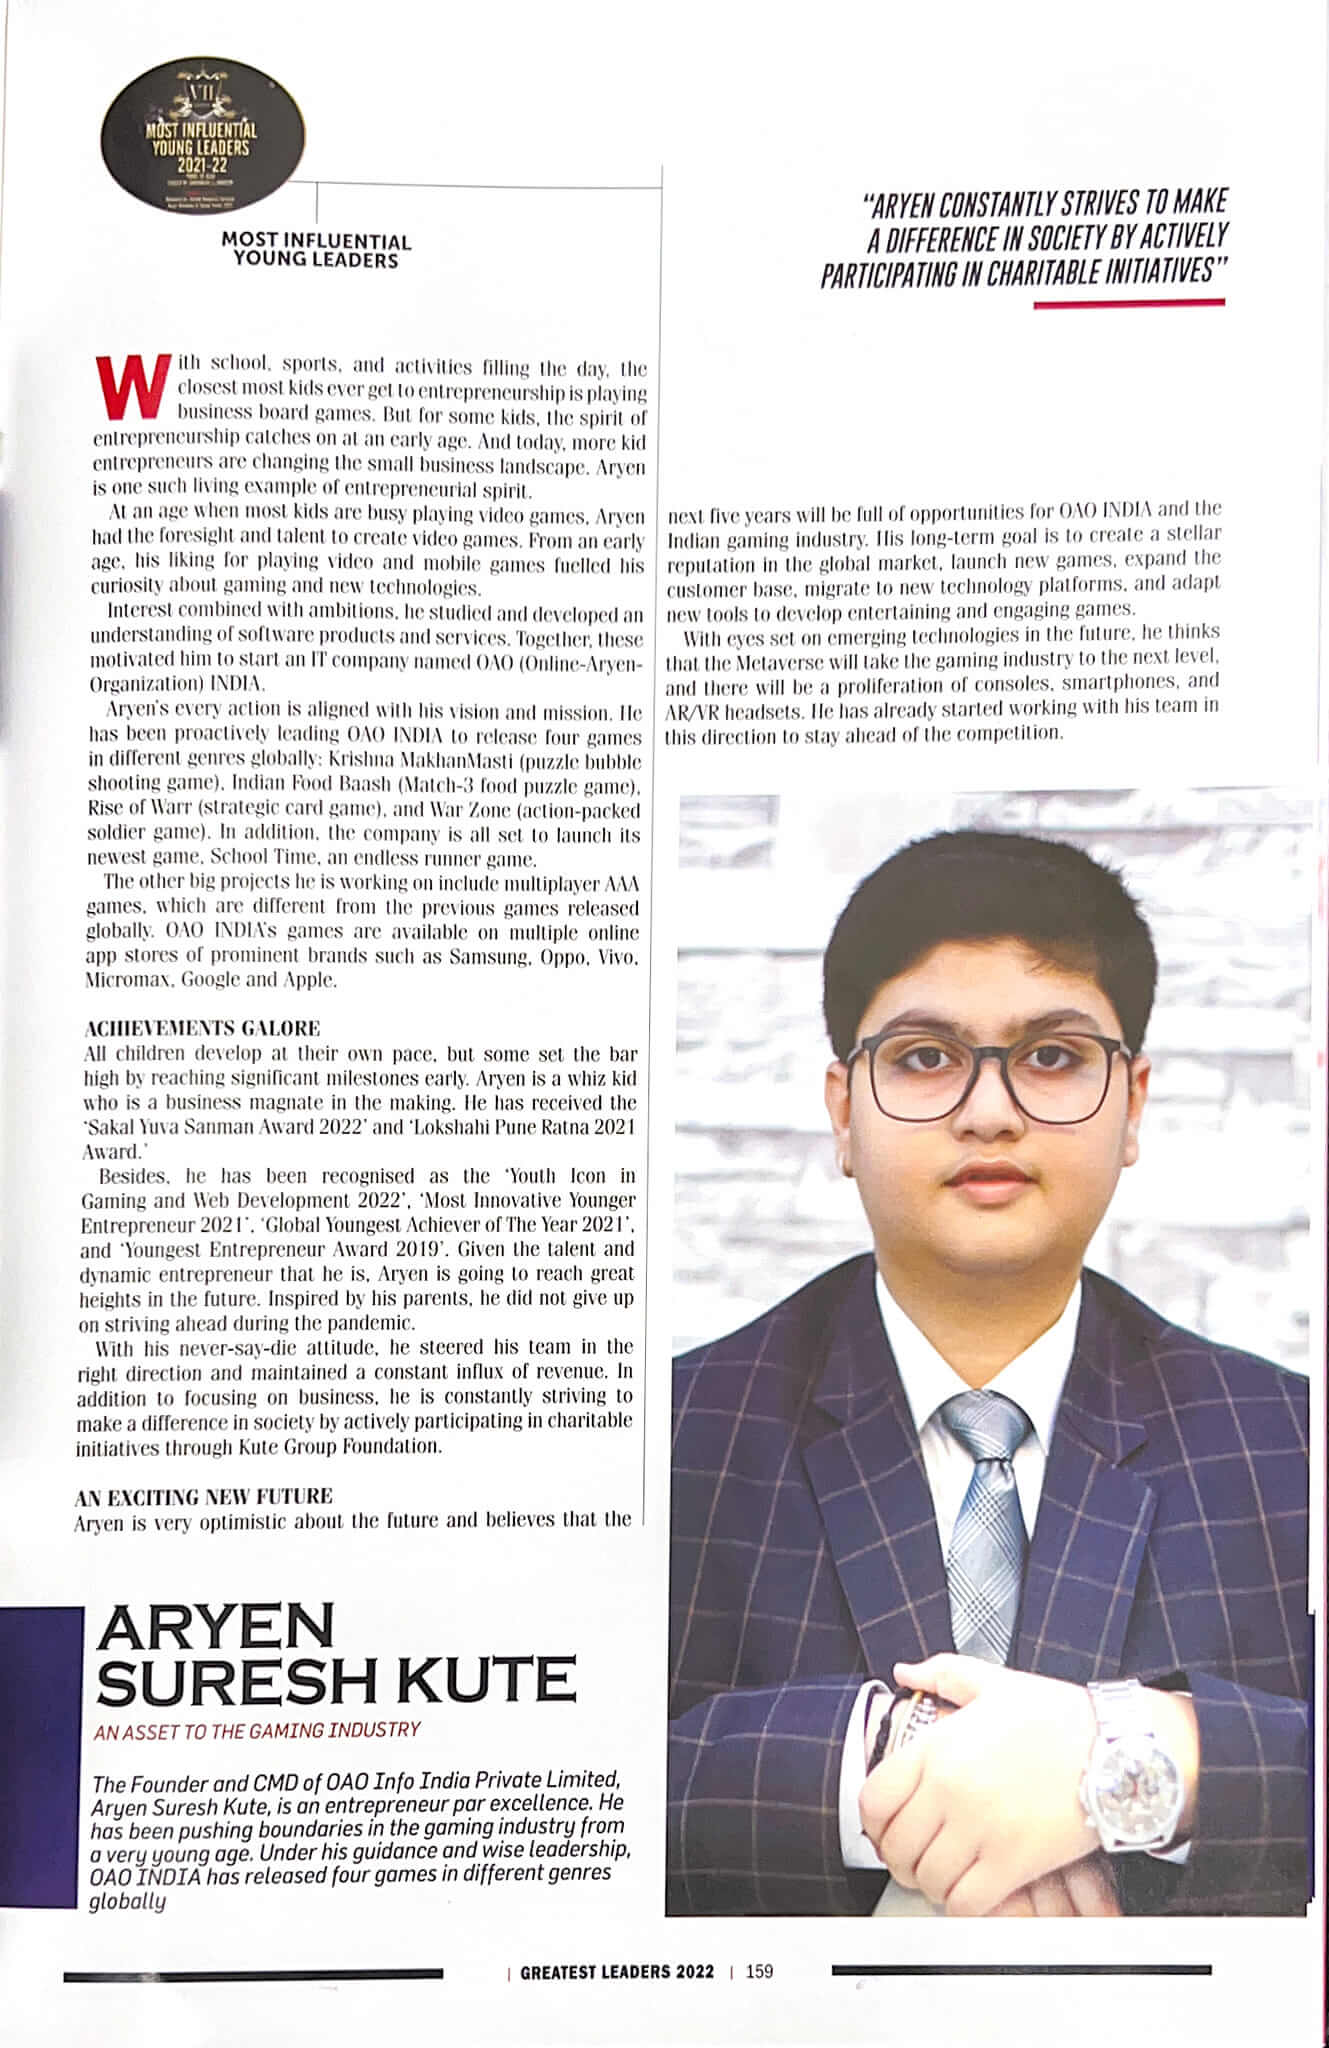 Aryen Kute featured in AsiaOne magazine 2022